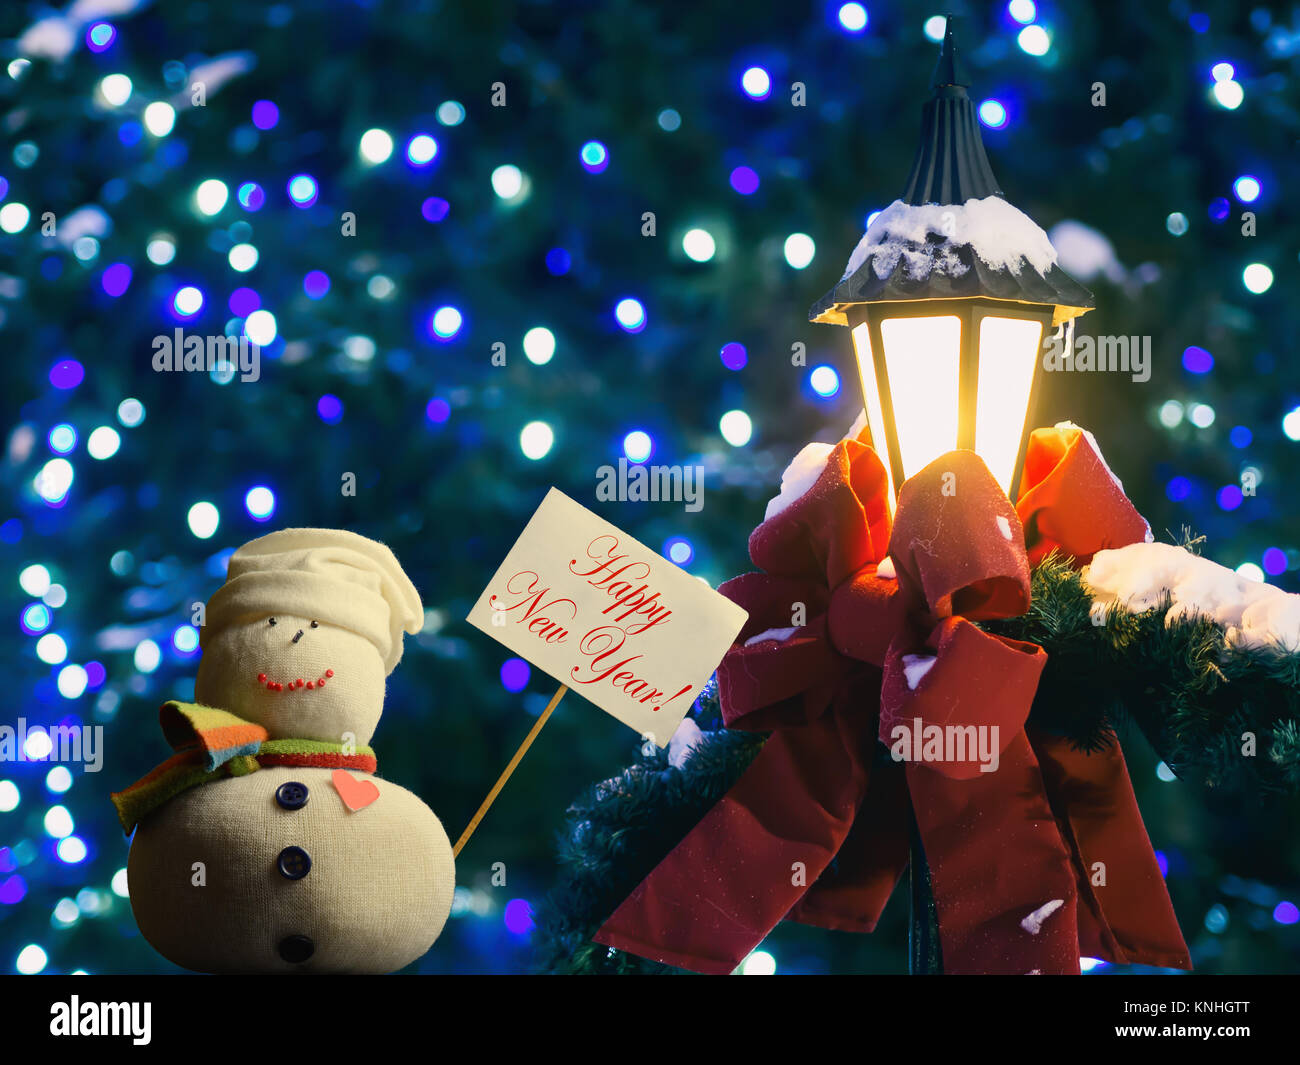 Schneemann Abbildung Holding ein Plakat mit Stock befestigt. Text "Frohes Neues Jahr!". Straßenlaterne in Red Ribbon und Tannenzweigen gewickelt. Stockfoto